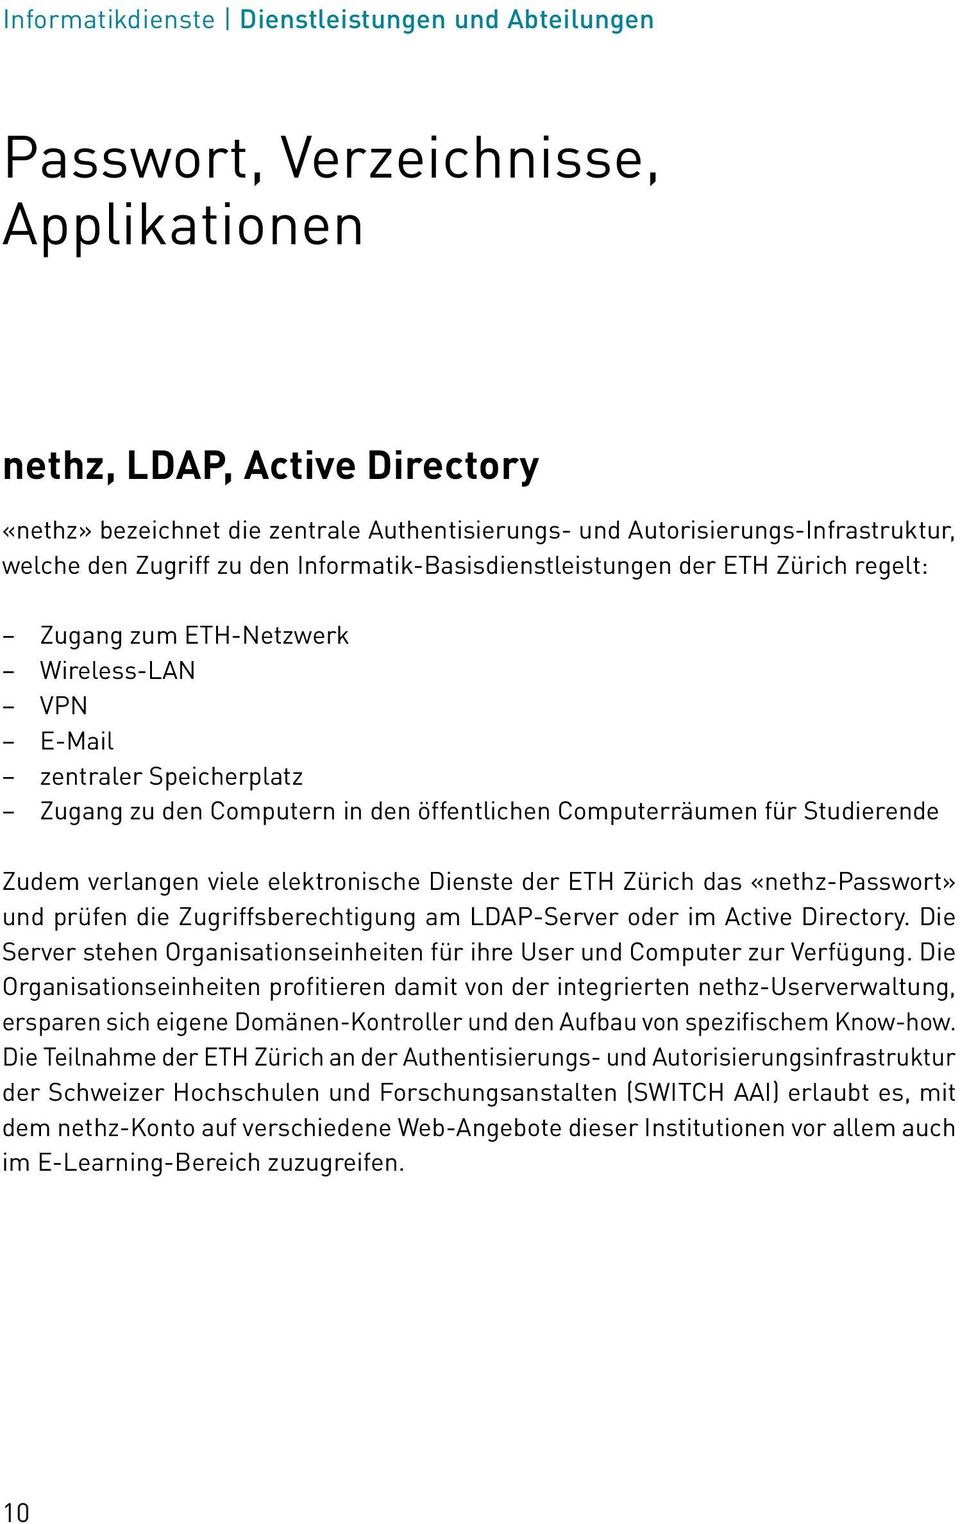 Computern in den öffentlichen Computerräumen für Studierende Zudem verlangen viele elektronische Dienste der ETH Zürich das «nethz-passwort» und prüfen die Zugriffsberechtigung am LDAP-Server oder im